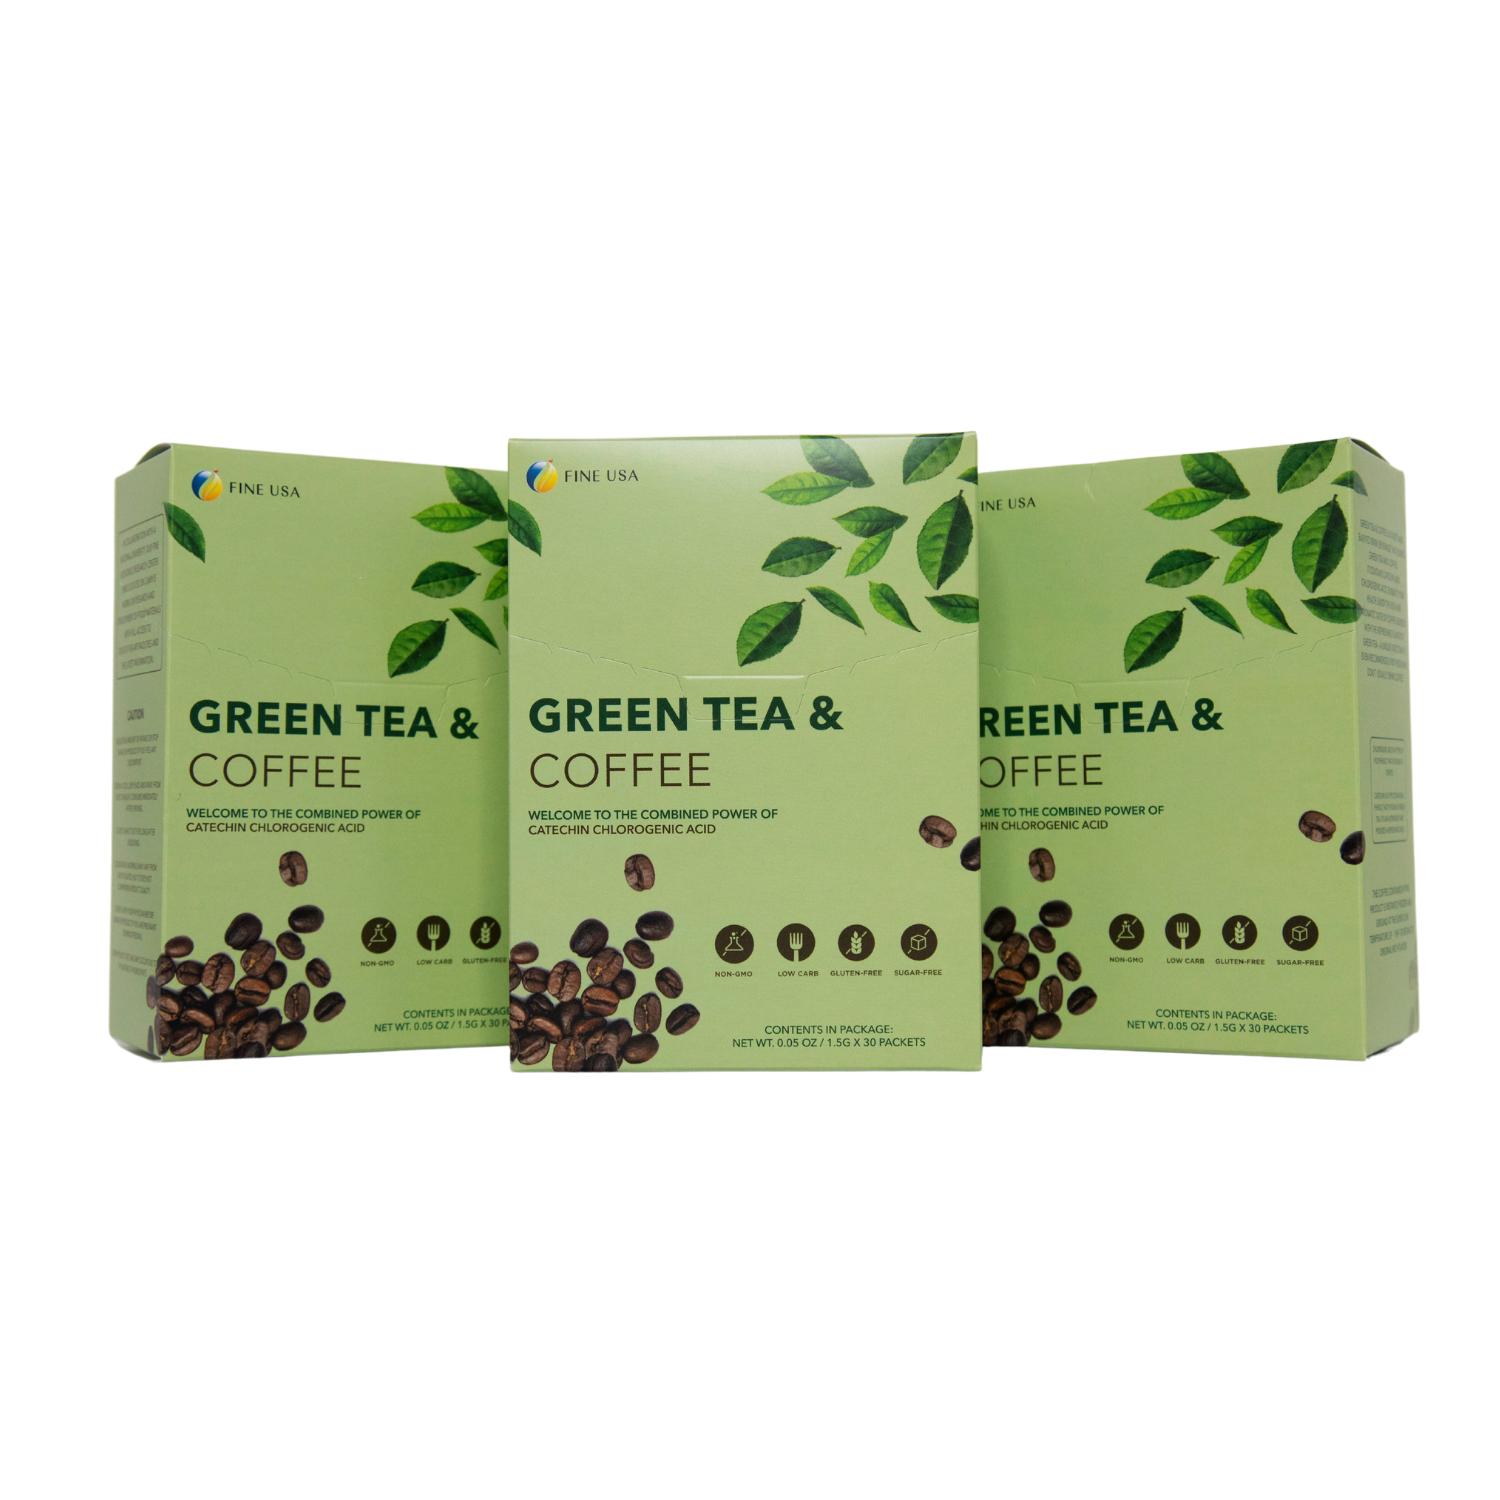 Green Tea & Coffee